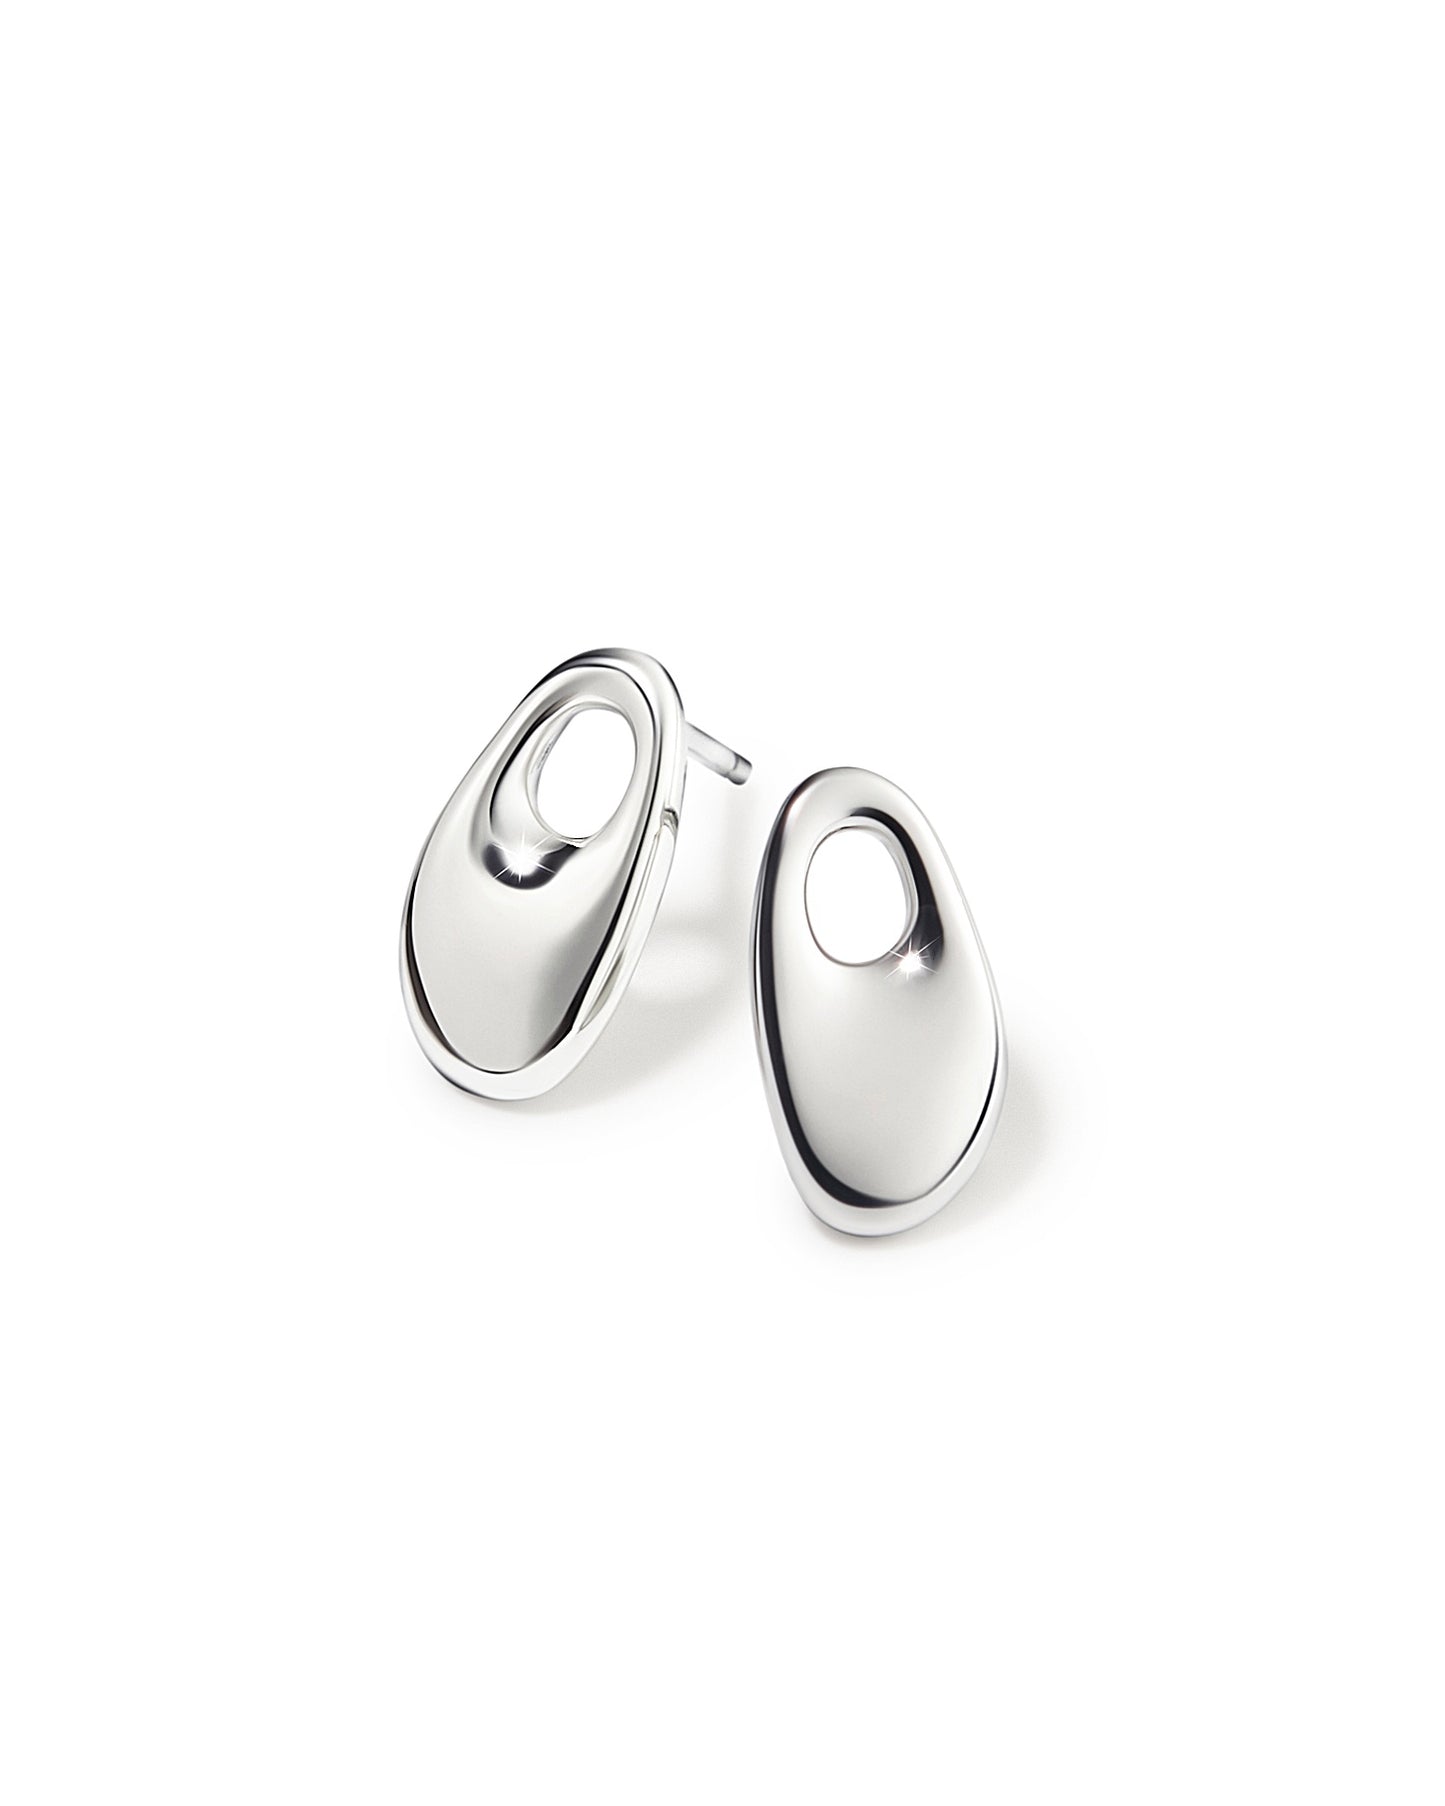 The Minimalist Sterling Silver Earrings